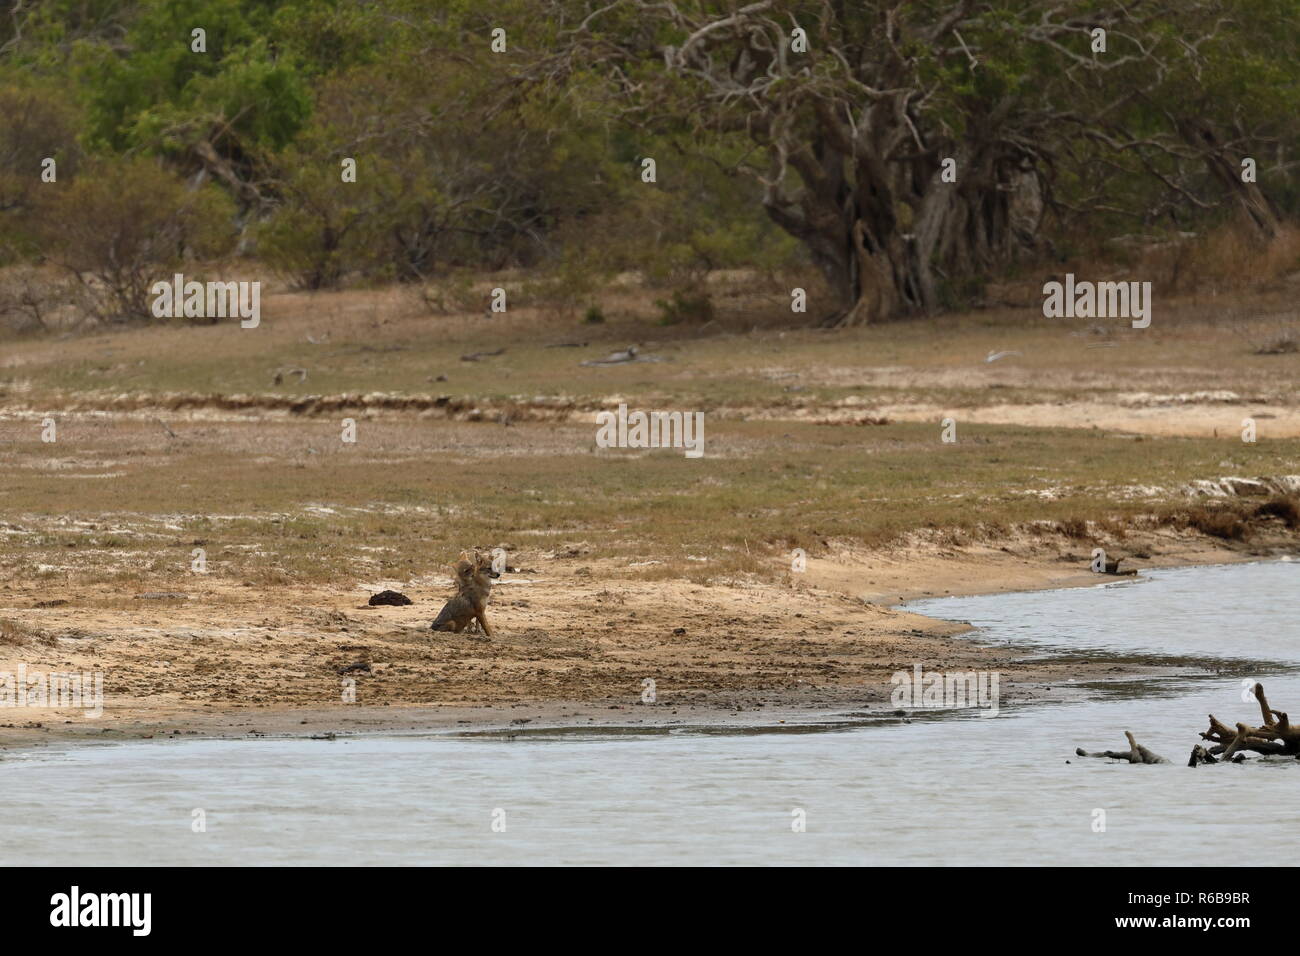 jackal in yala national park in sri lanka Stock Photo